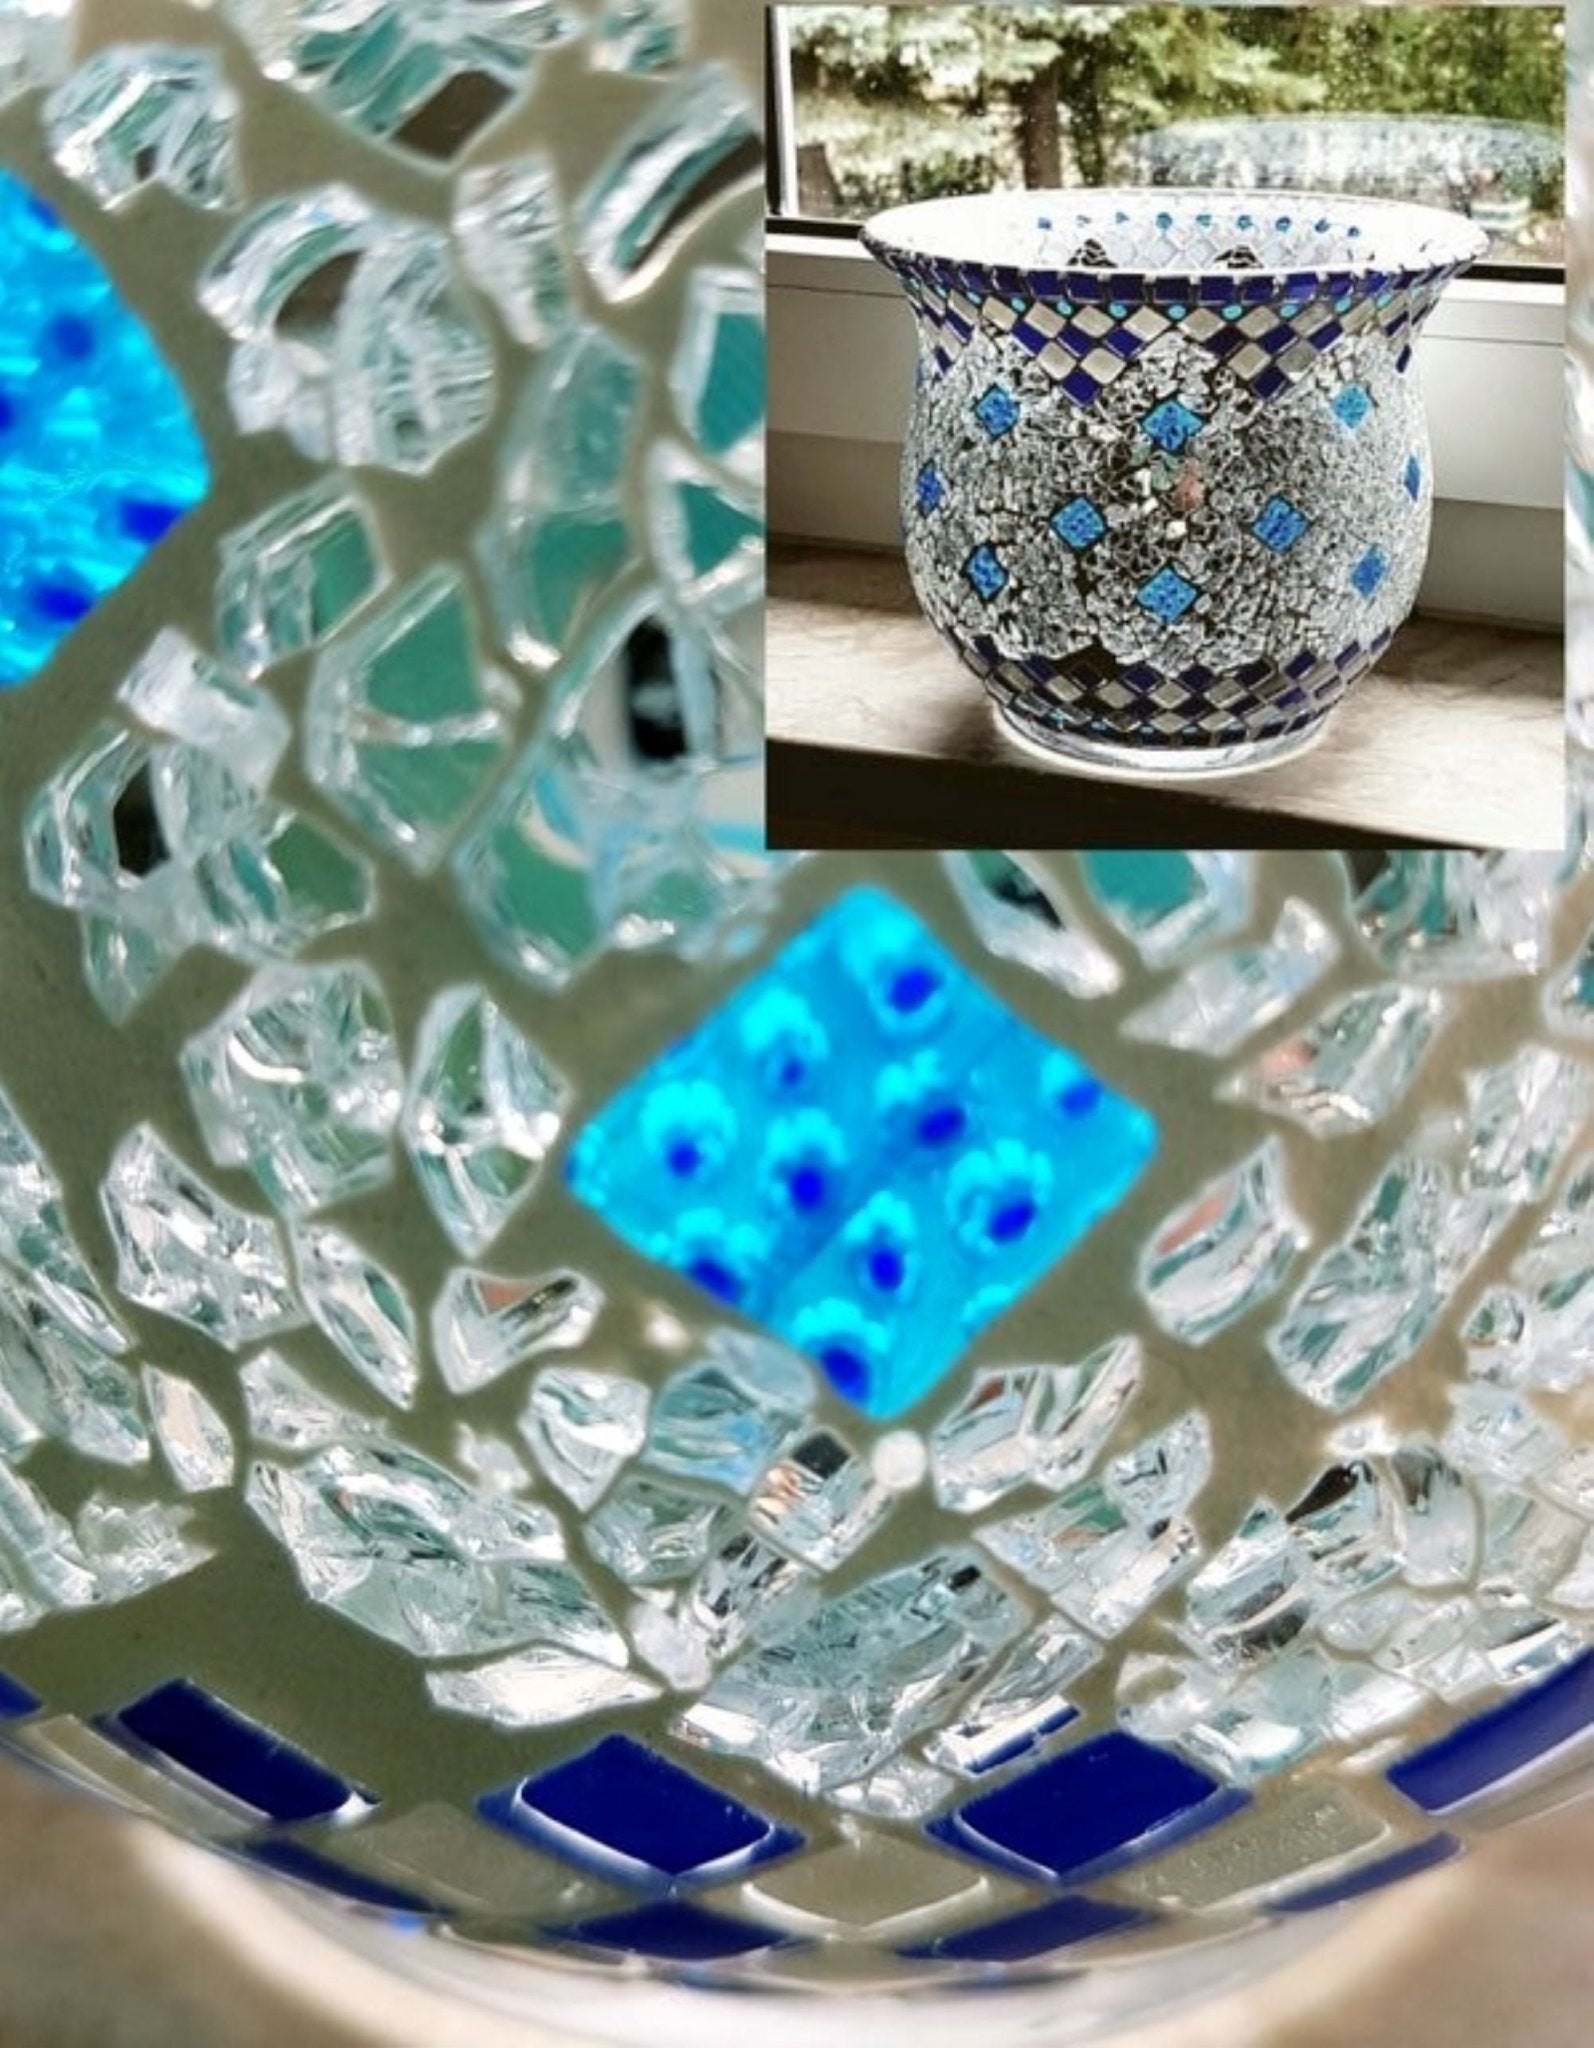 Handgemachtes Windlicht in blau und silber 17 cm hoch - Einzelstück - Mosaikkasten aus alt mach neu blau